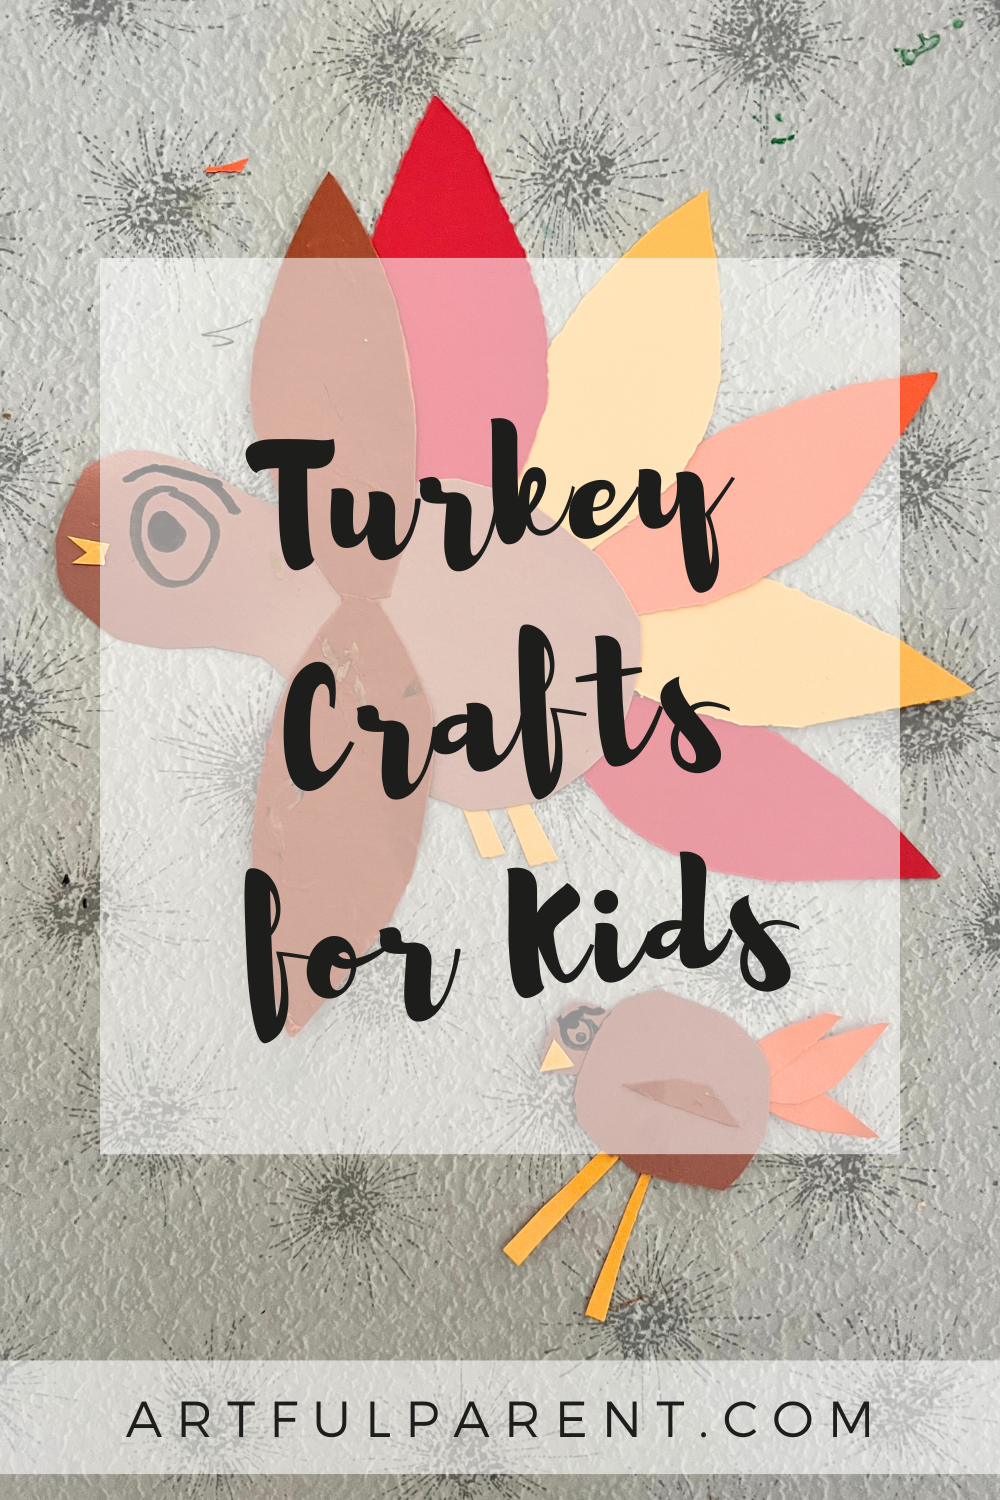 5 Fun Turkey Crafts for Kids